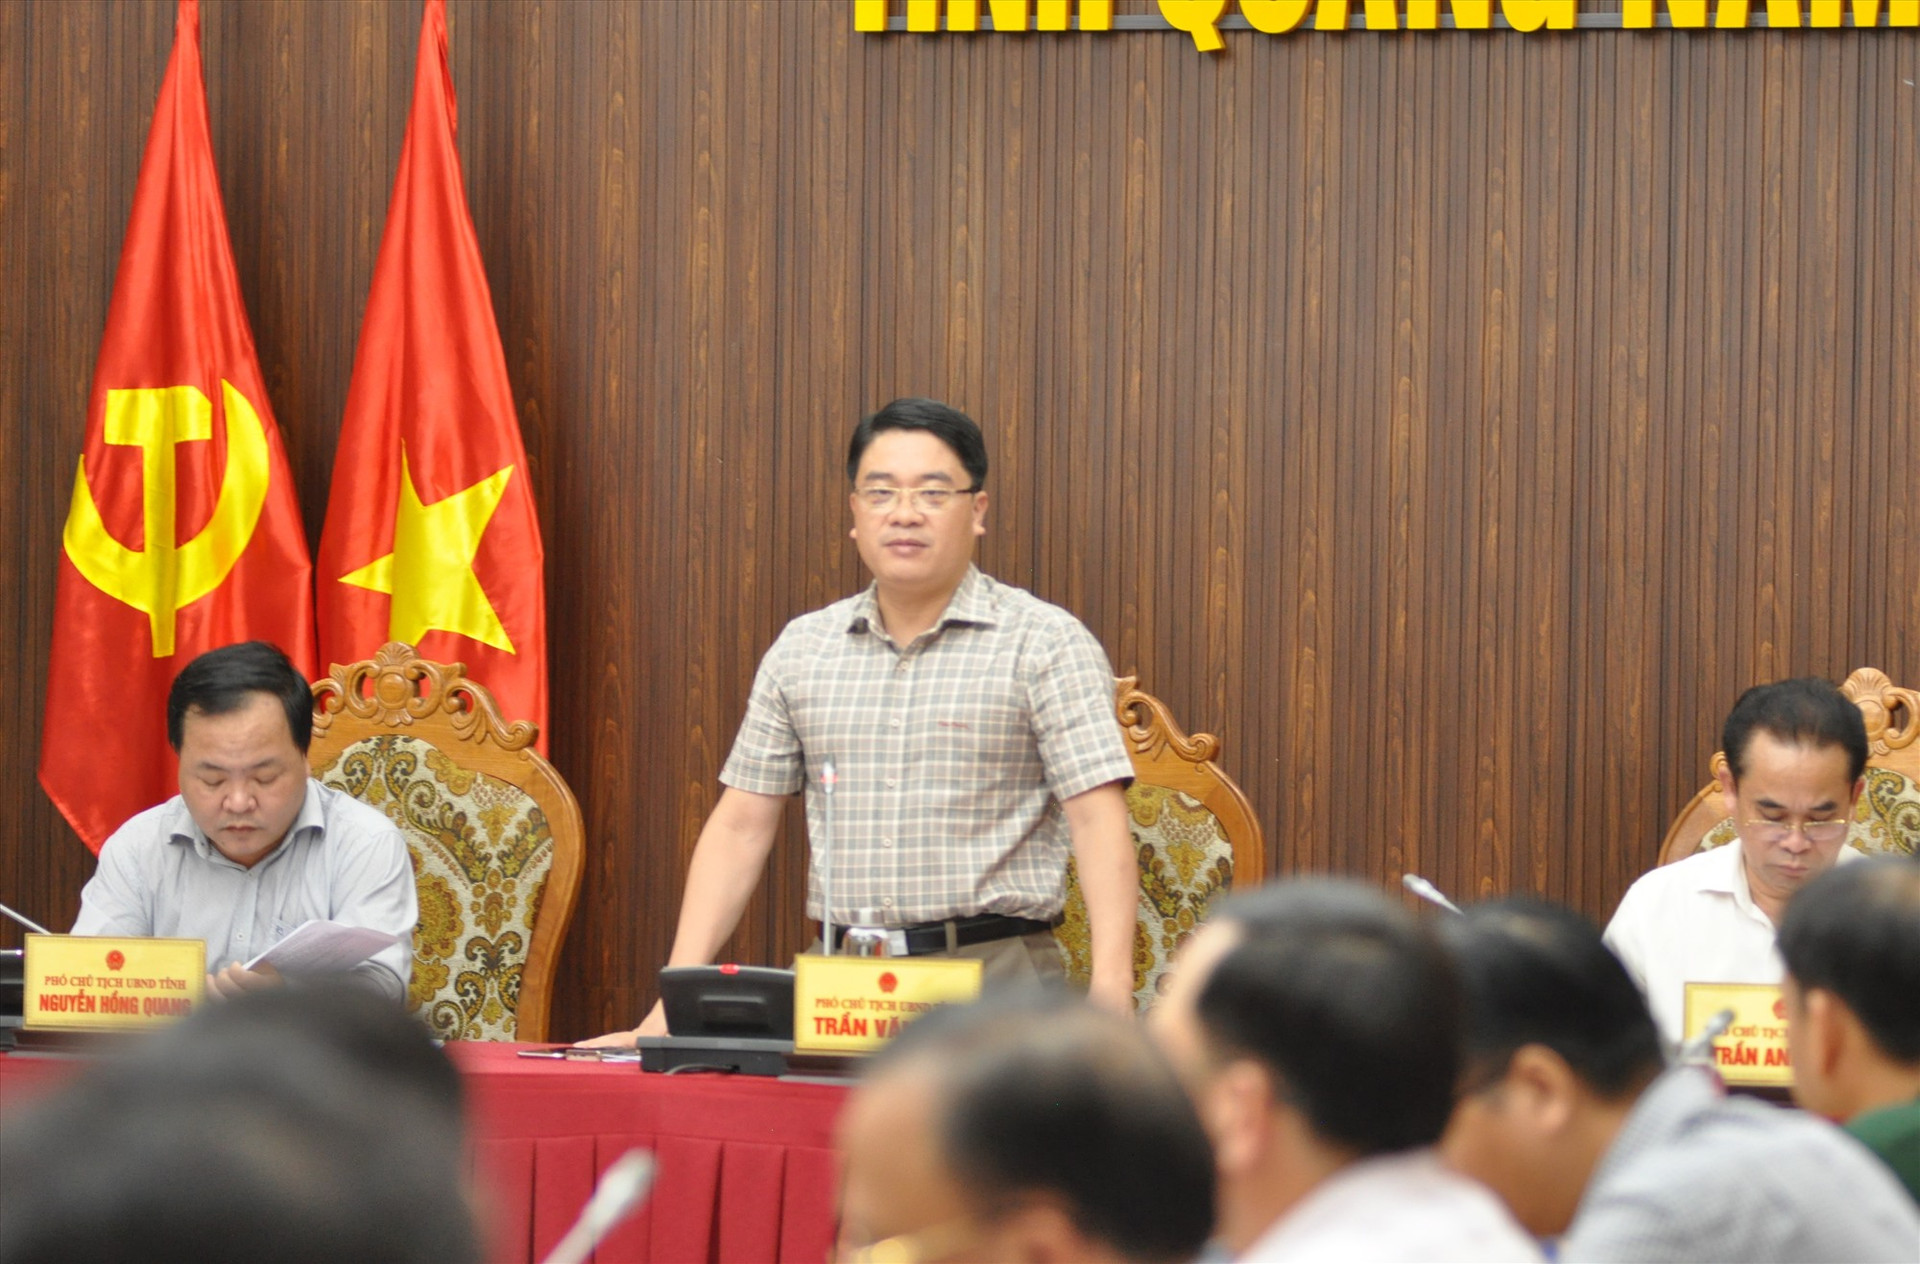 Phó Chủ tịch UBND tỉnh Trần Văn Tân kết luận hội nghị. Ảnh: X.P